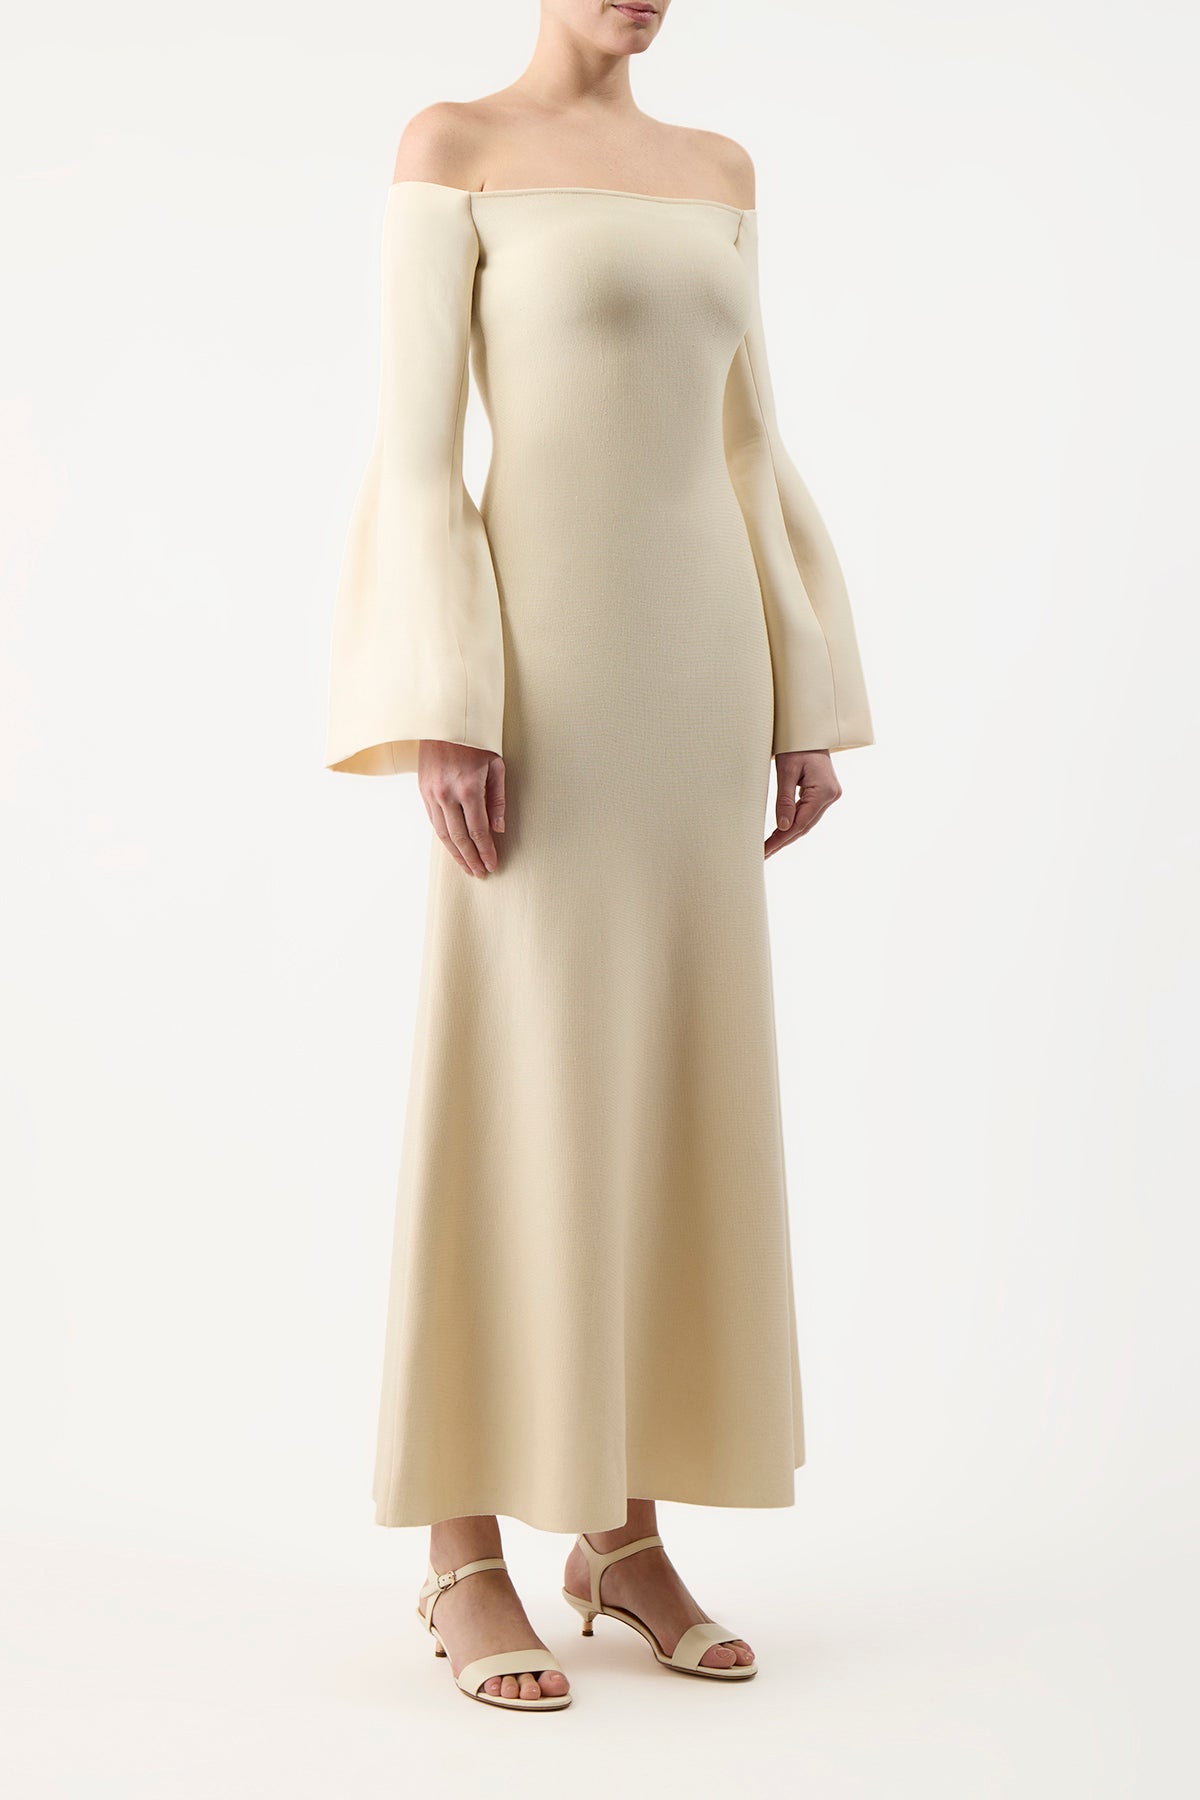 Sinead Dress in Silk Wool